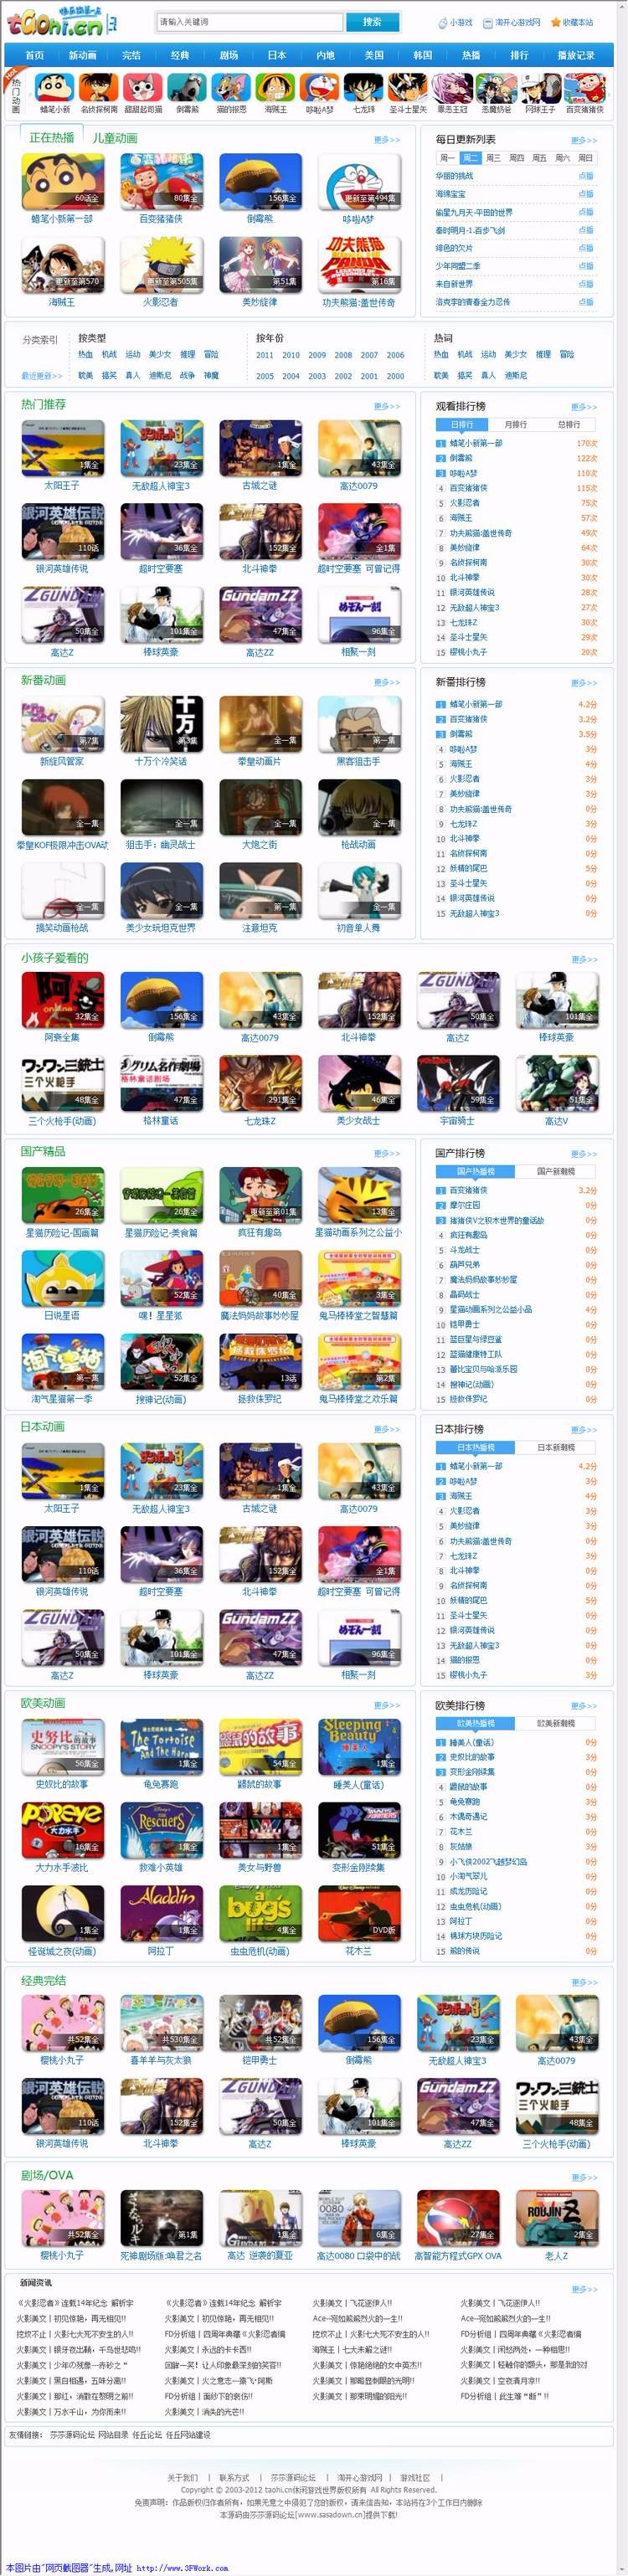 帝国CMS 淘开心游戏动漫网商业版 动画模板源码网站 无域名功能限制